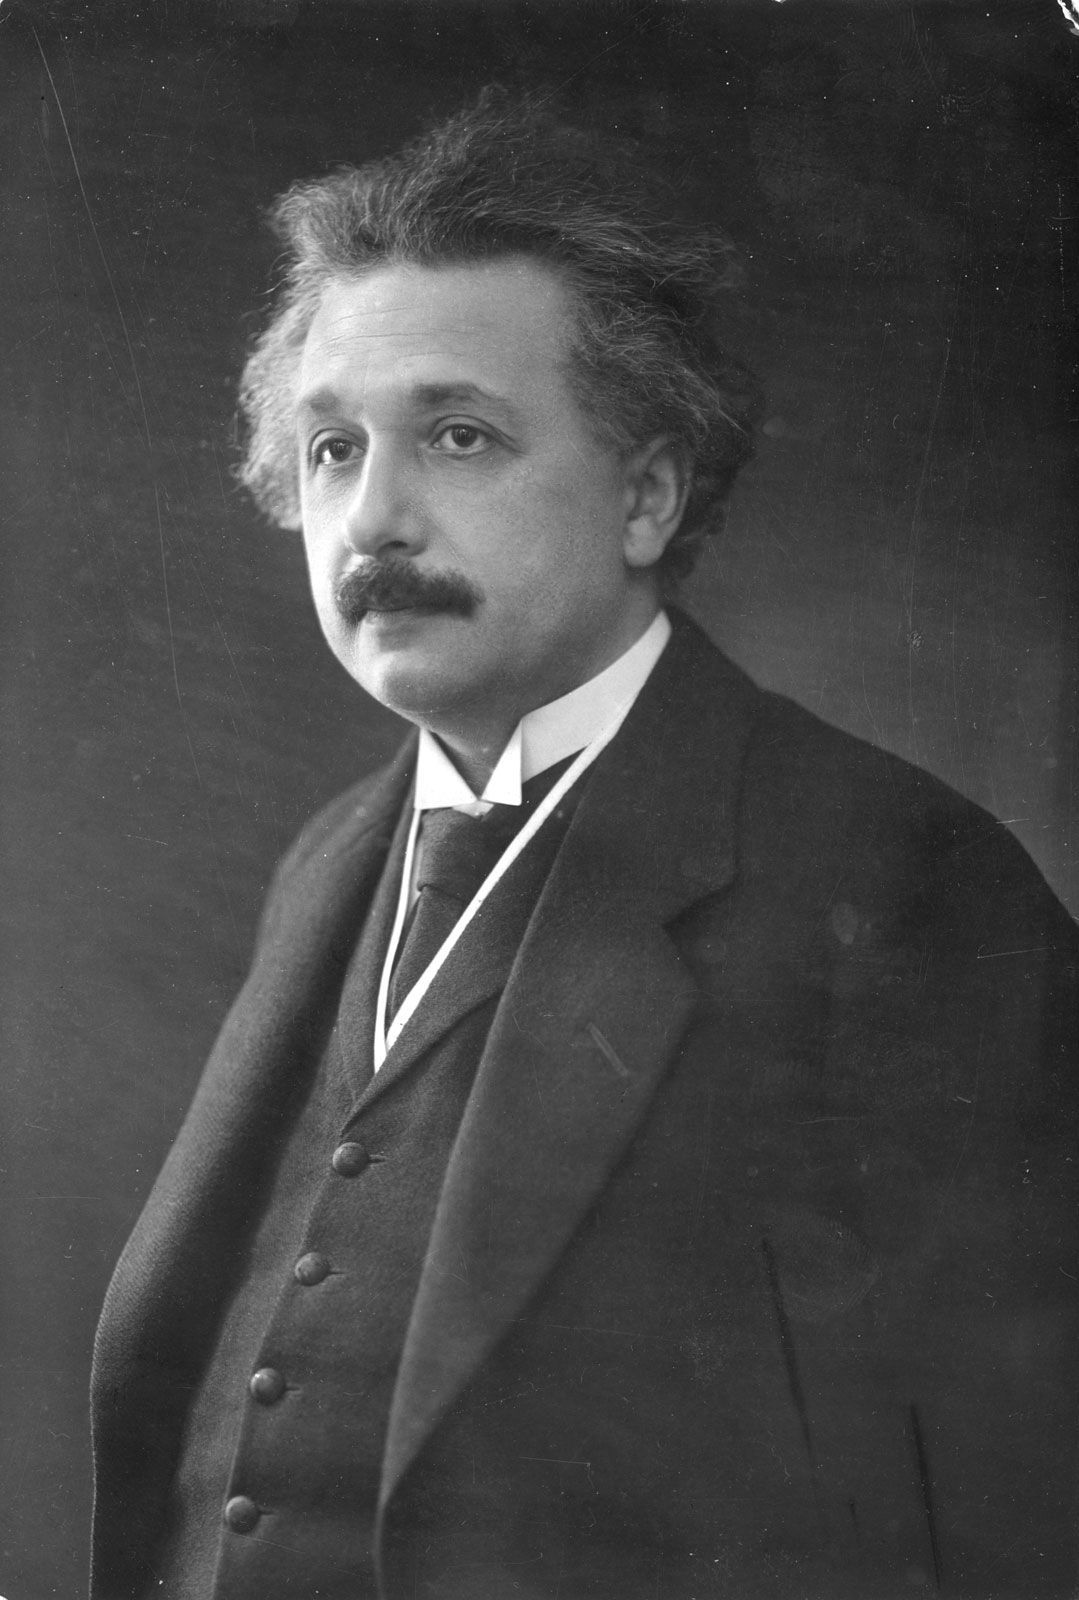 Mann aus Niederkassel (Isuf S.) übertrifft Albert Einstein im IQ-Test